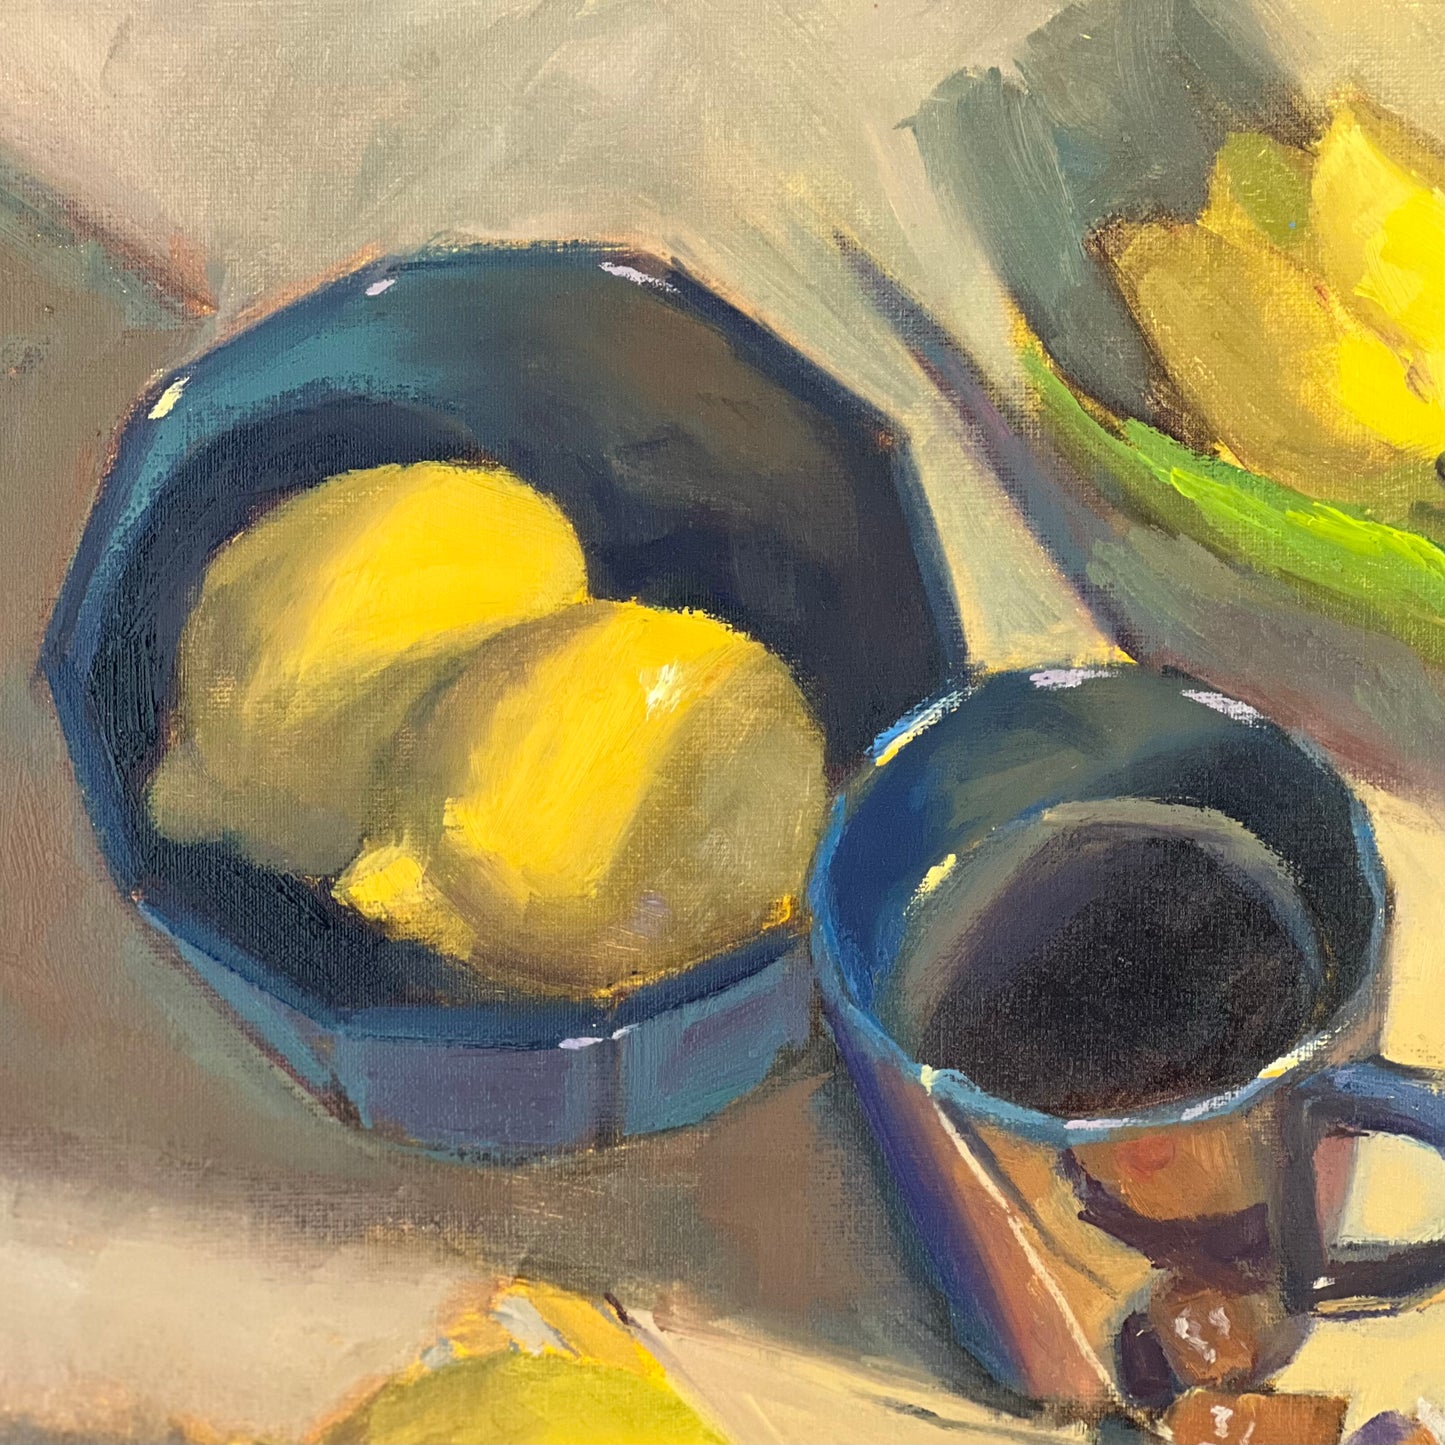 Lemon and tea! - Large Still Life Oil Painting